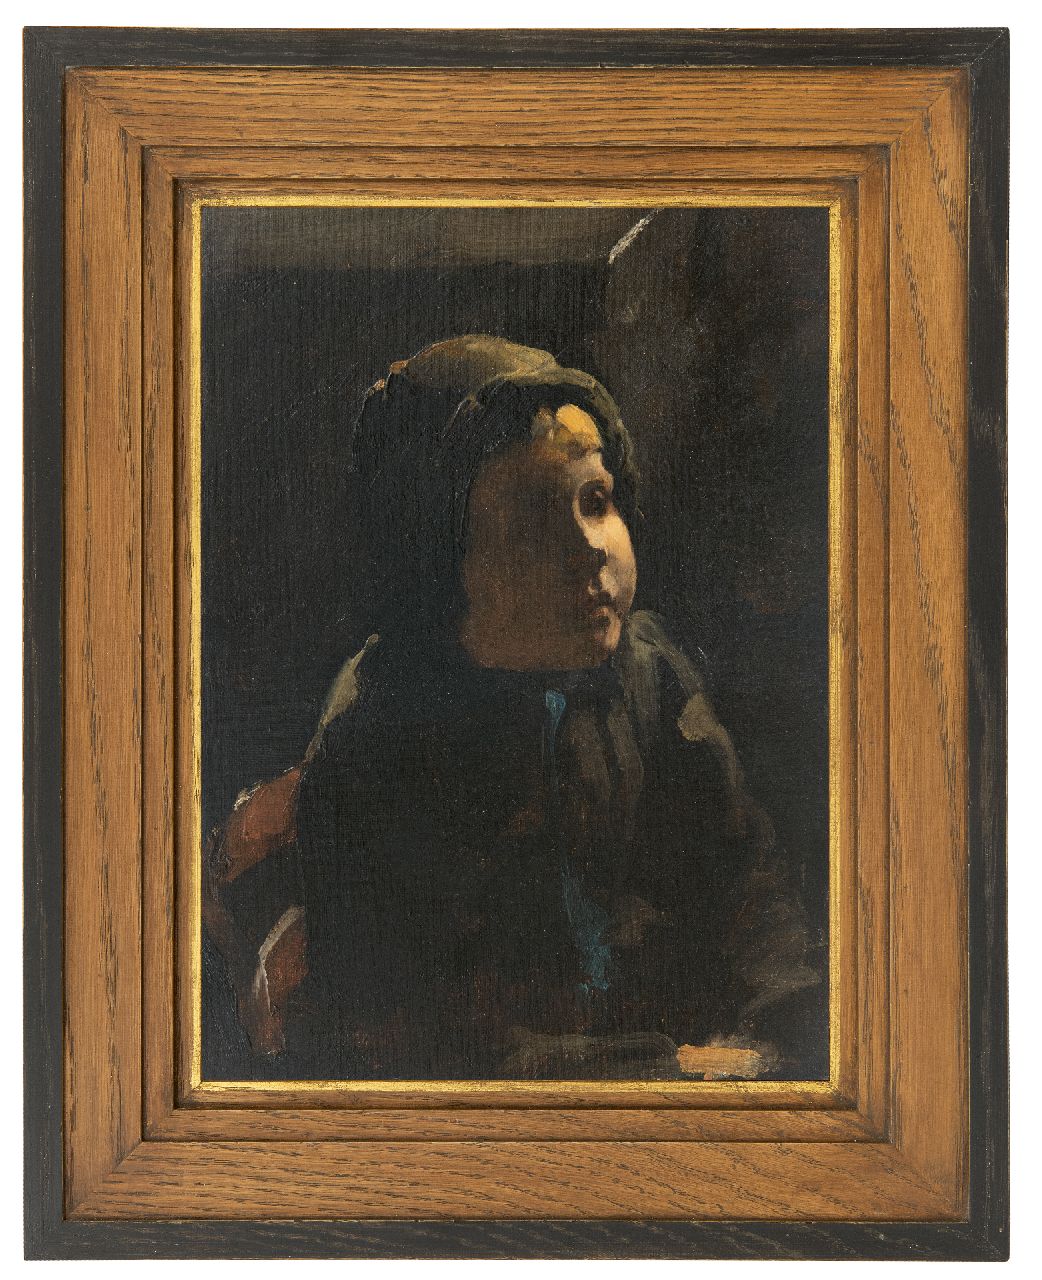 Witsen W.A.  | 'Willem' Arnold Witsen | Gemälde zum Verkauf angeboten | Bauernmädchen, Öl auf Malereifaser 35,5 x 25,3 cm, zu datieren um 1885